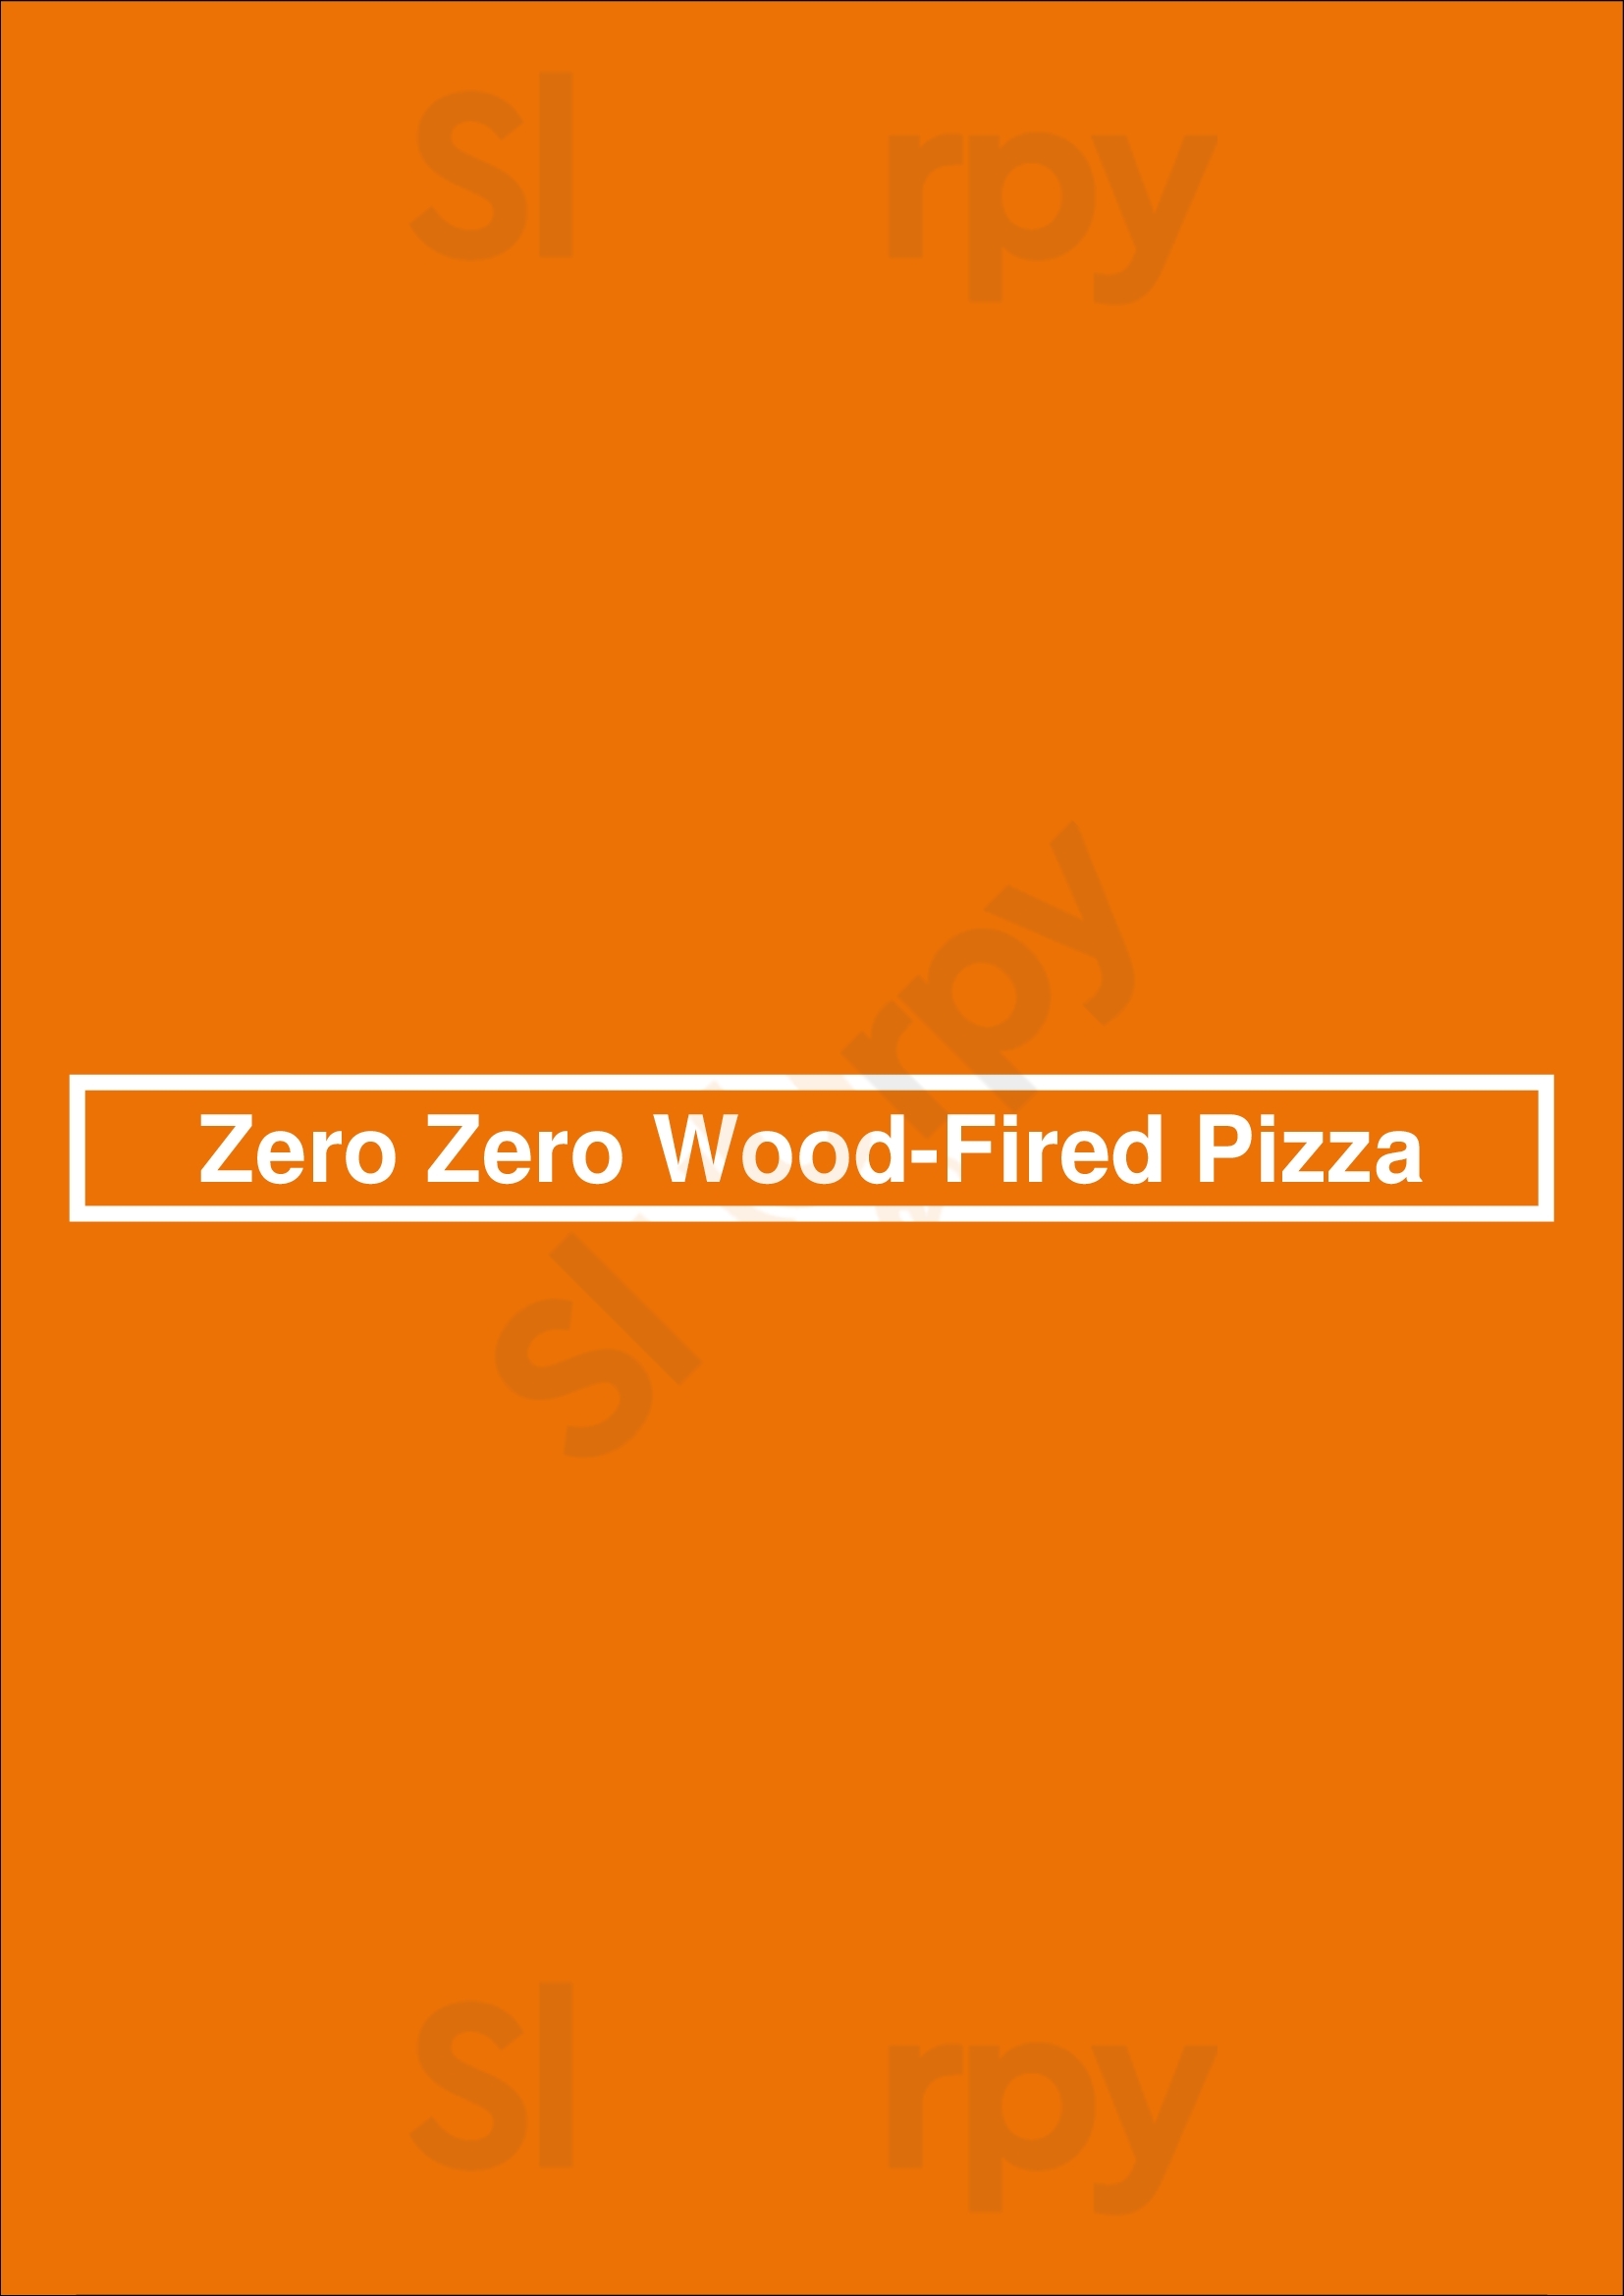 Zero Zero Wood-fired Pizza Dun Laoghaire Menu - 1